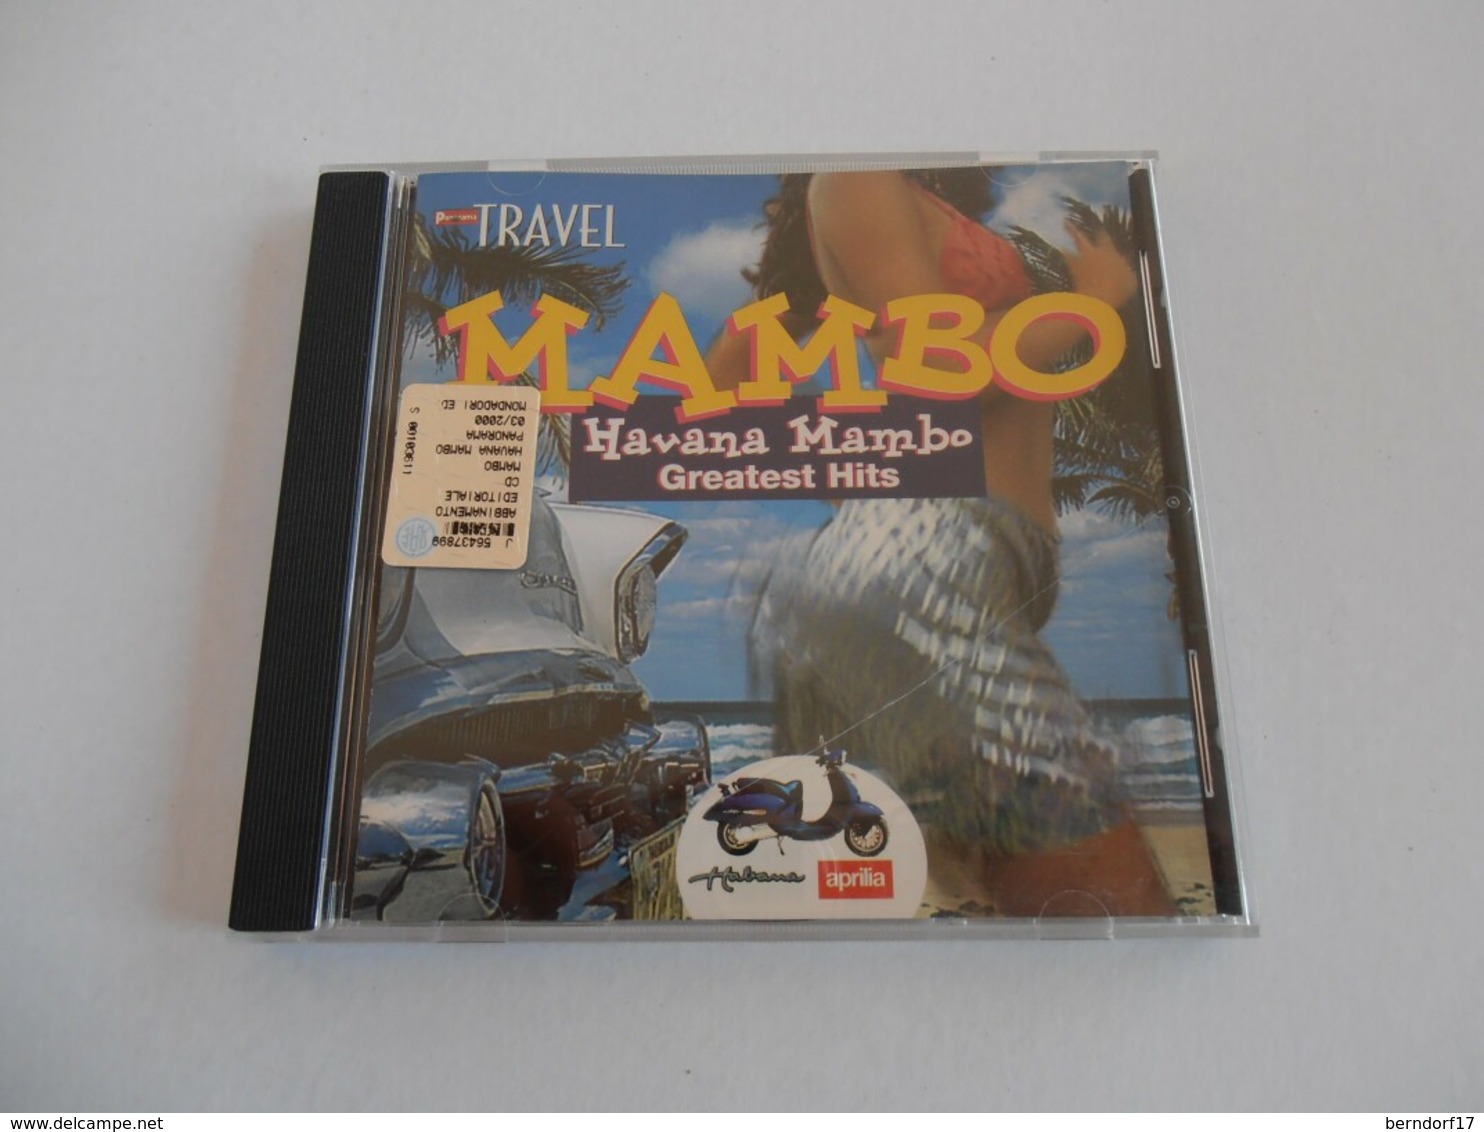 Mambo - Havana Mambo - Greatest Hits - CD - World Music